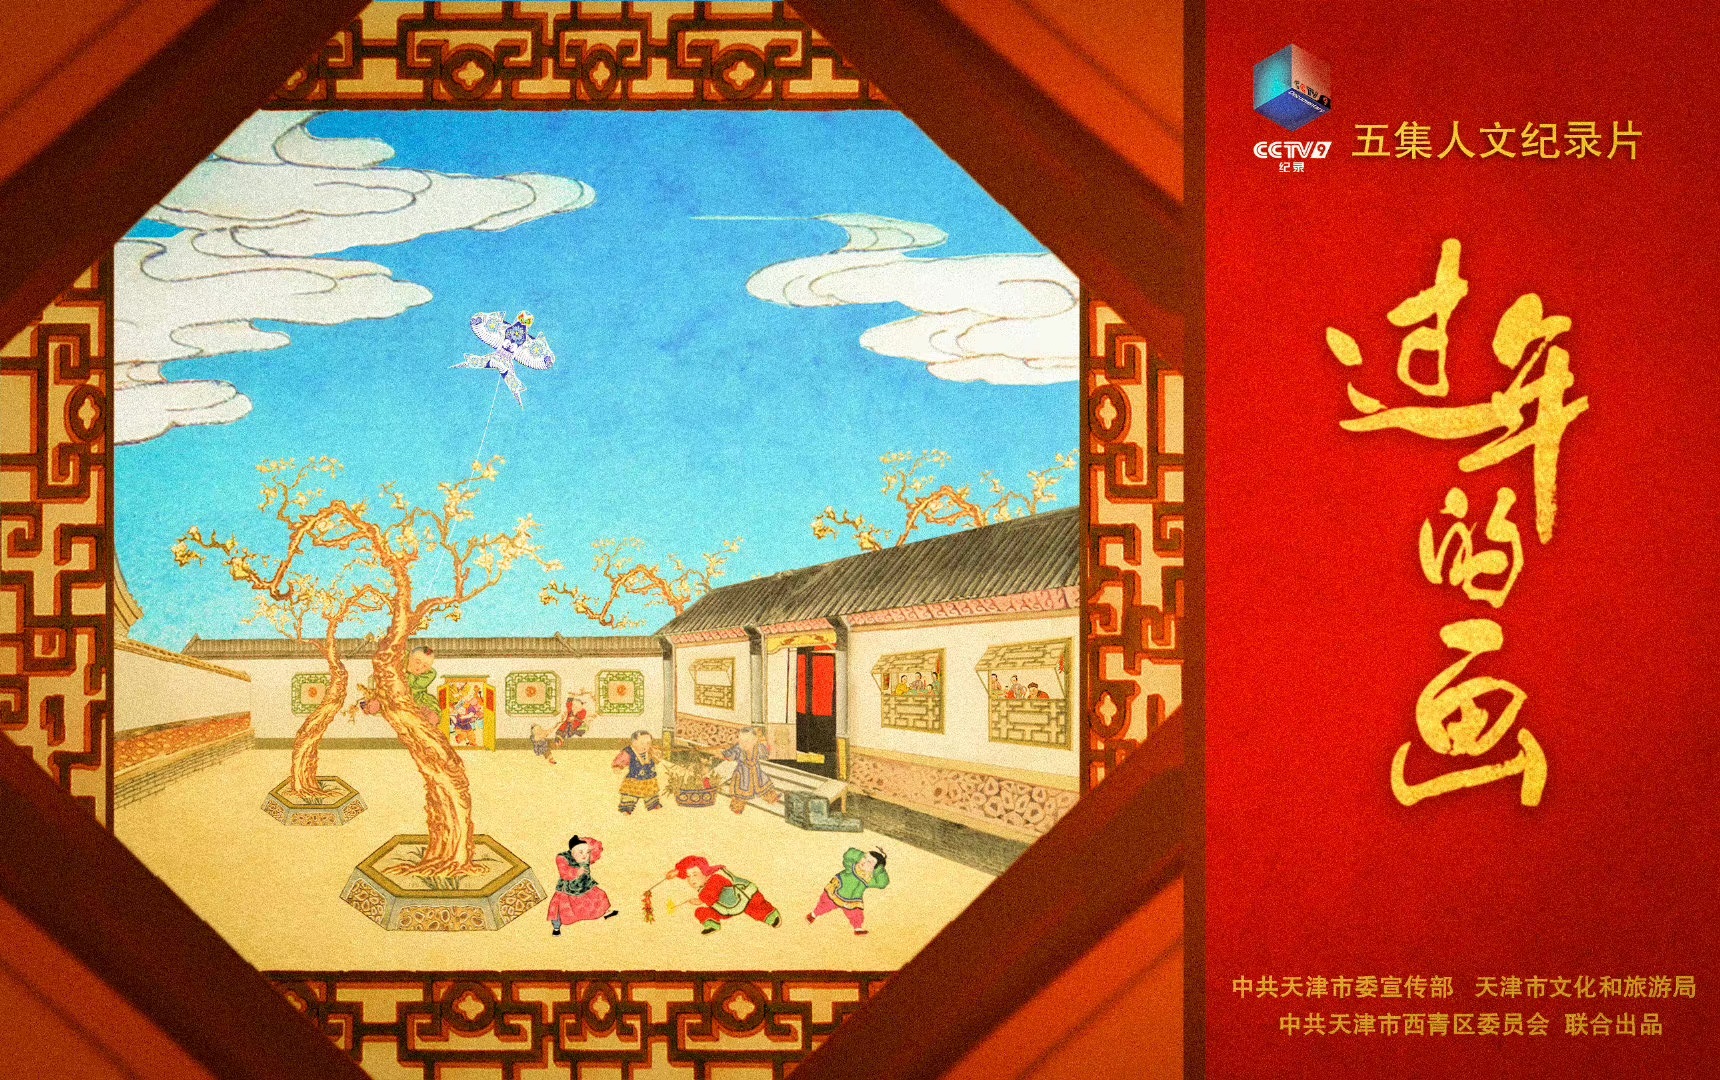 杨柳青木版年画的前世今生 ——纪录片《过年的画》赏析